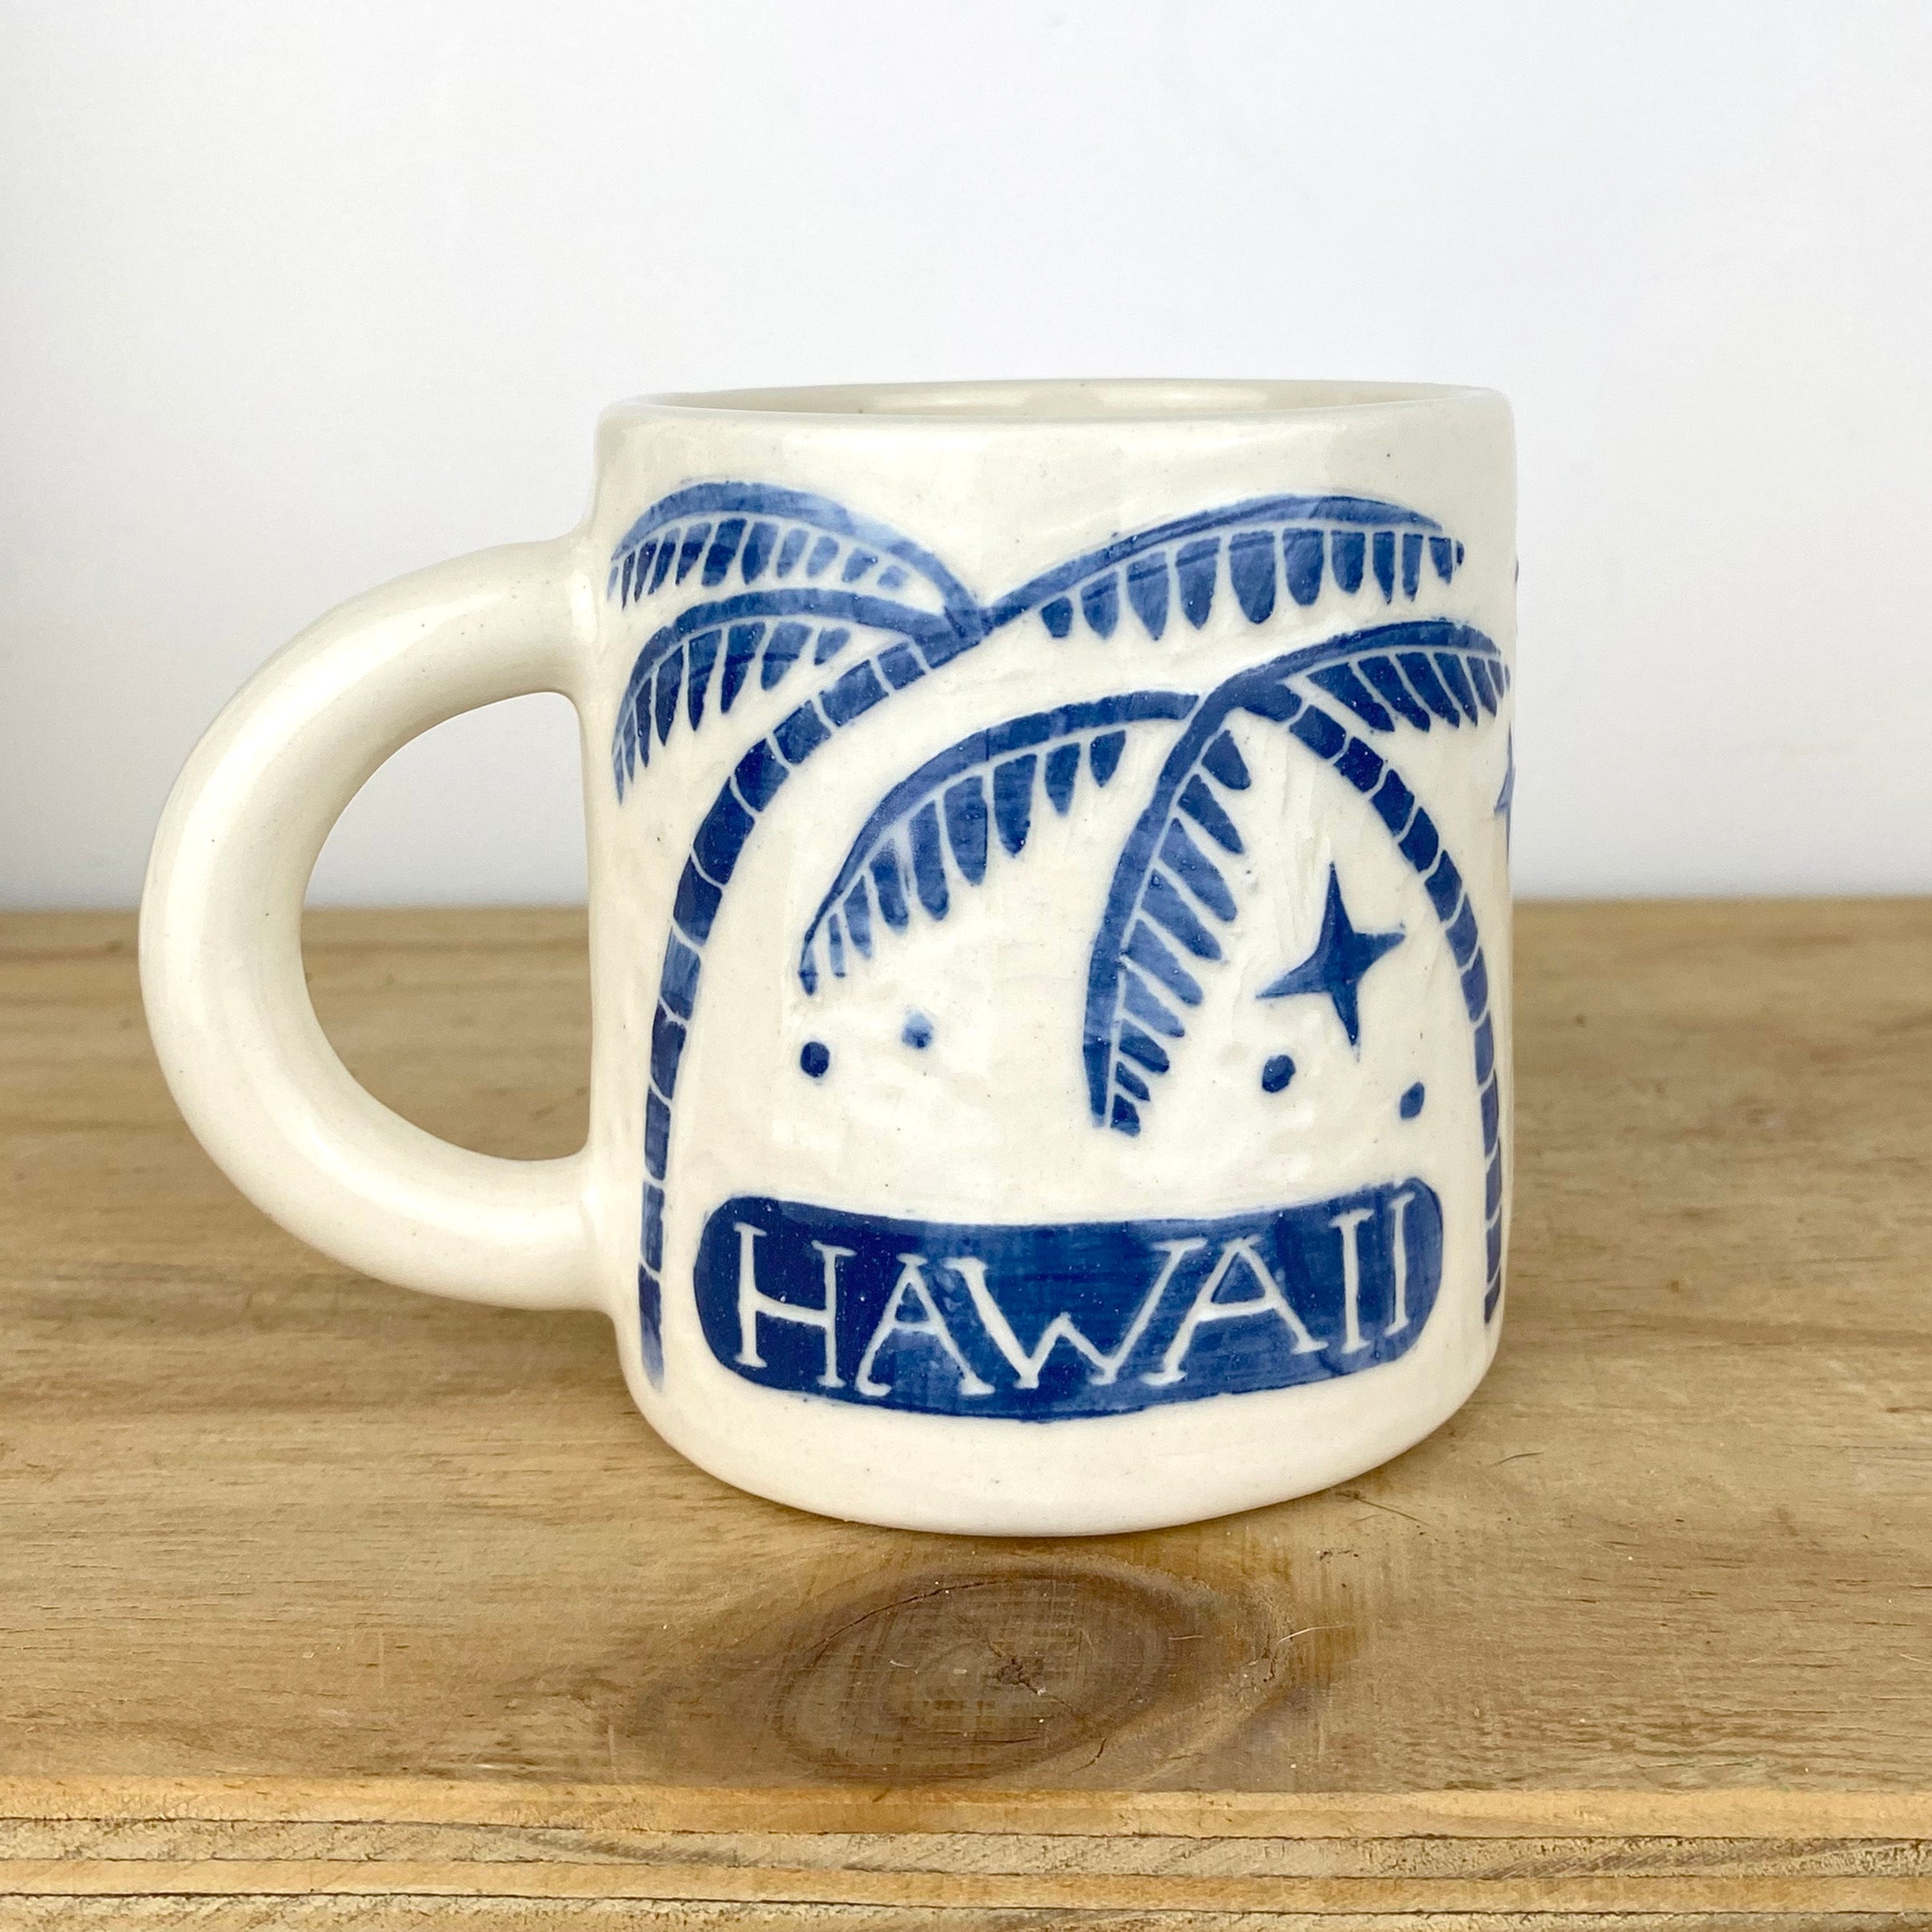 HAWAII PALMS DINER MUG / az 011